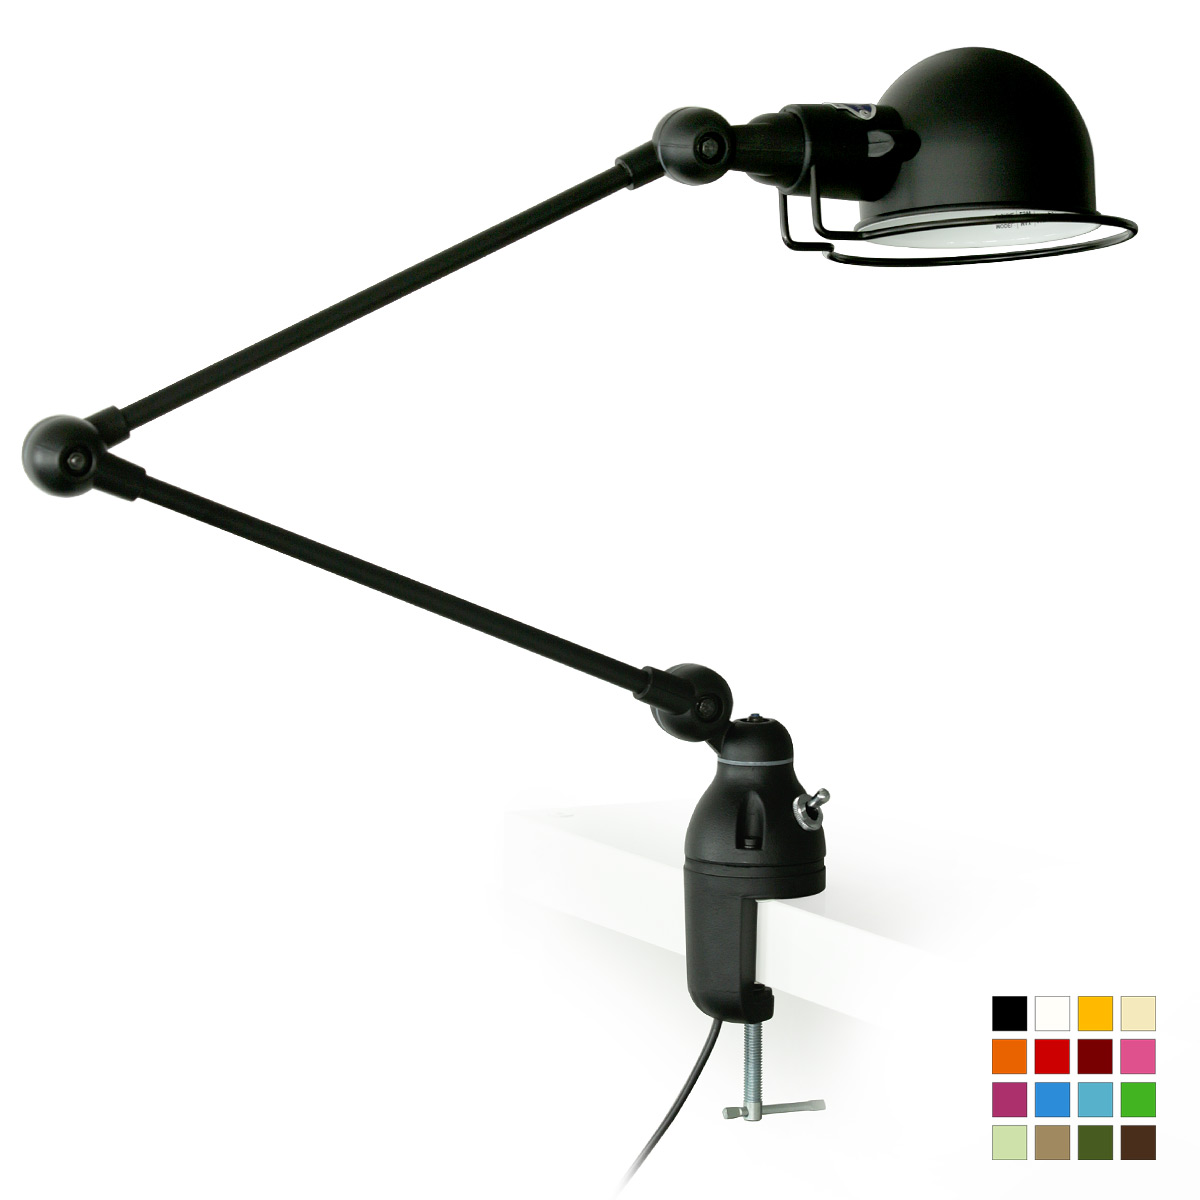 Klemm-Lampe SIGNAL für Tischplatten und Regale: Klemm-Lampe für Arbeits-Tischplatten und Regale bis 40 mm, hier Modell 2 mit zwei Armen (Jieldé SI332), Graphitschwarz (RAL 9011) matt